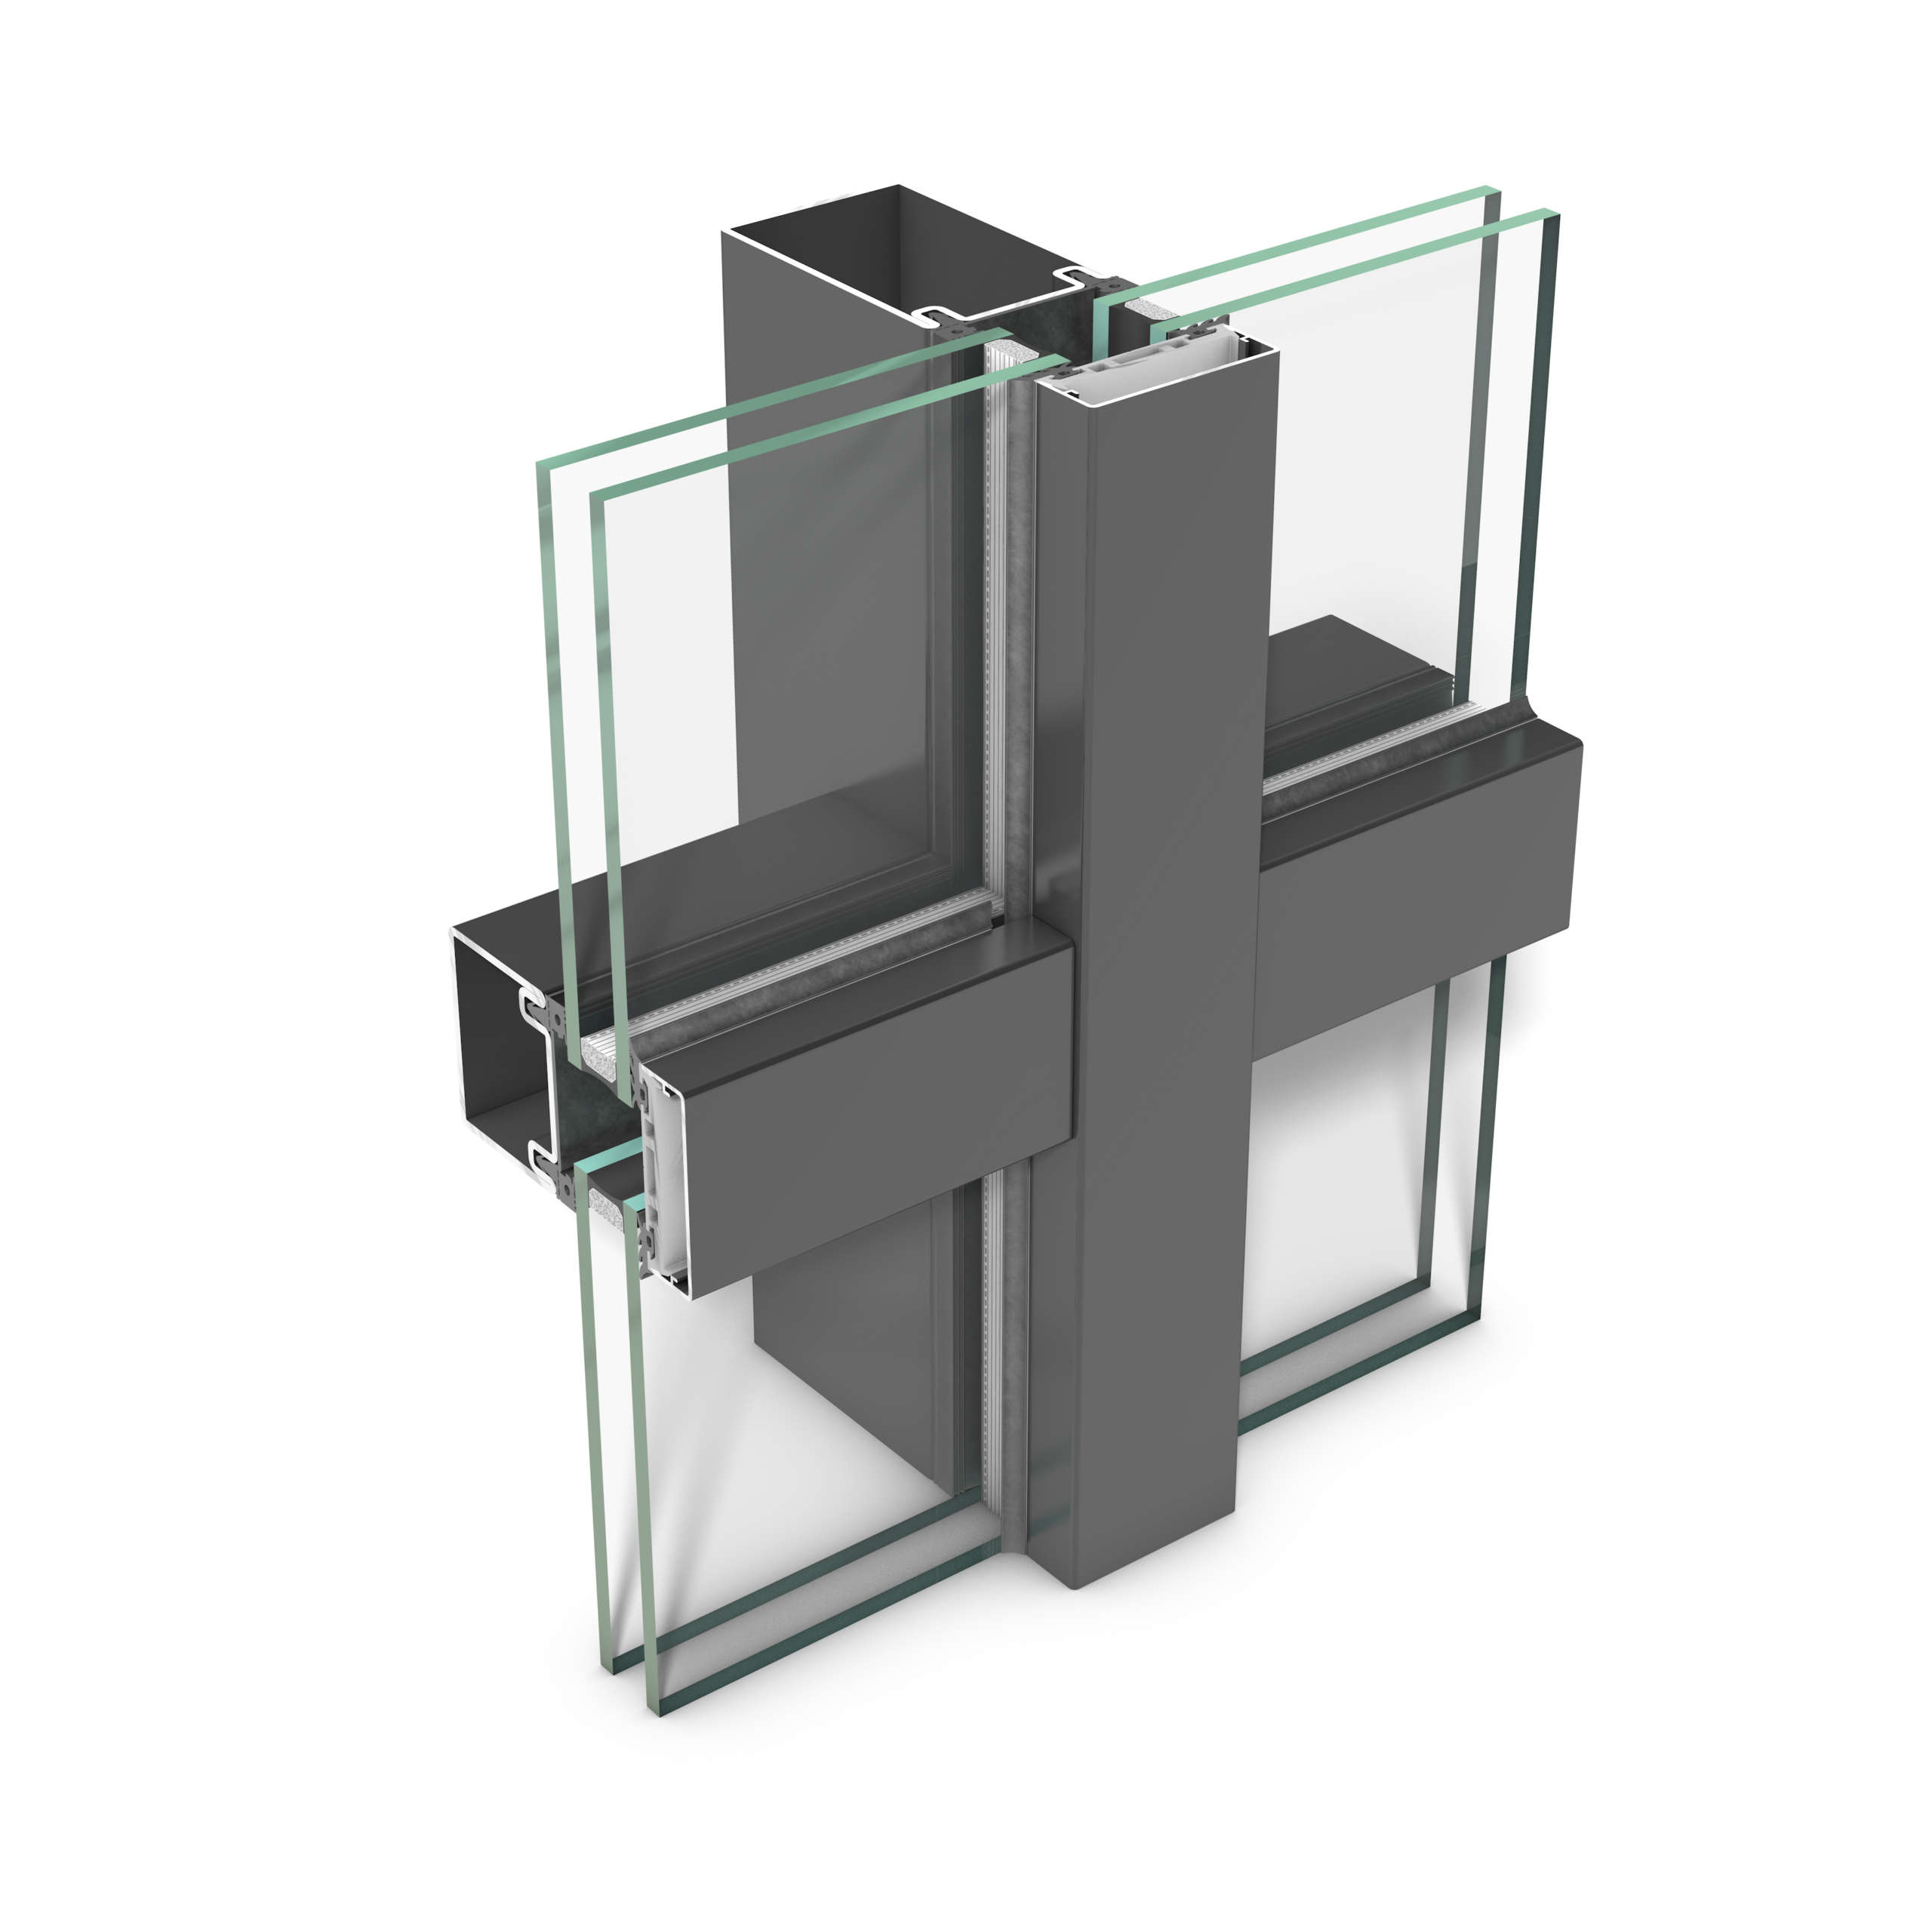 rp tec 60, Pfosten-Riegel-Fassade aus Stahl mit 60 mm Ansichtsbreite